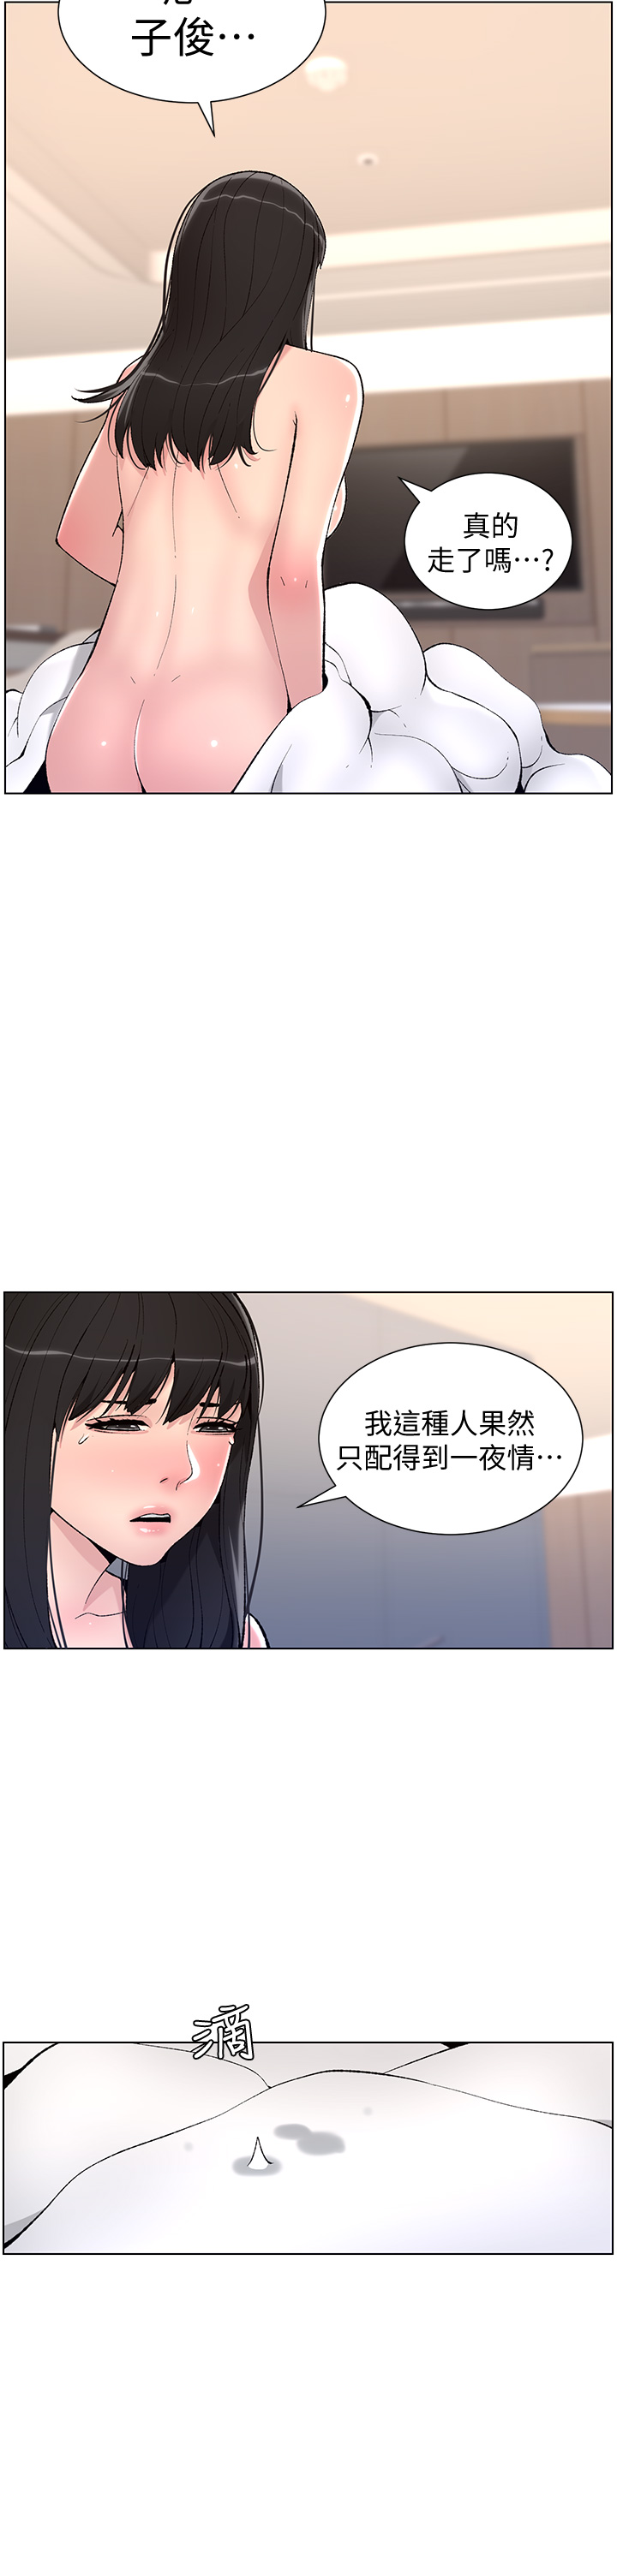 韩国污漫画 帝王App 第11话 少女的第一次高潮 22